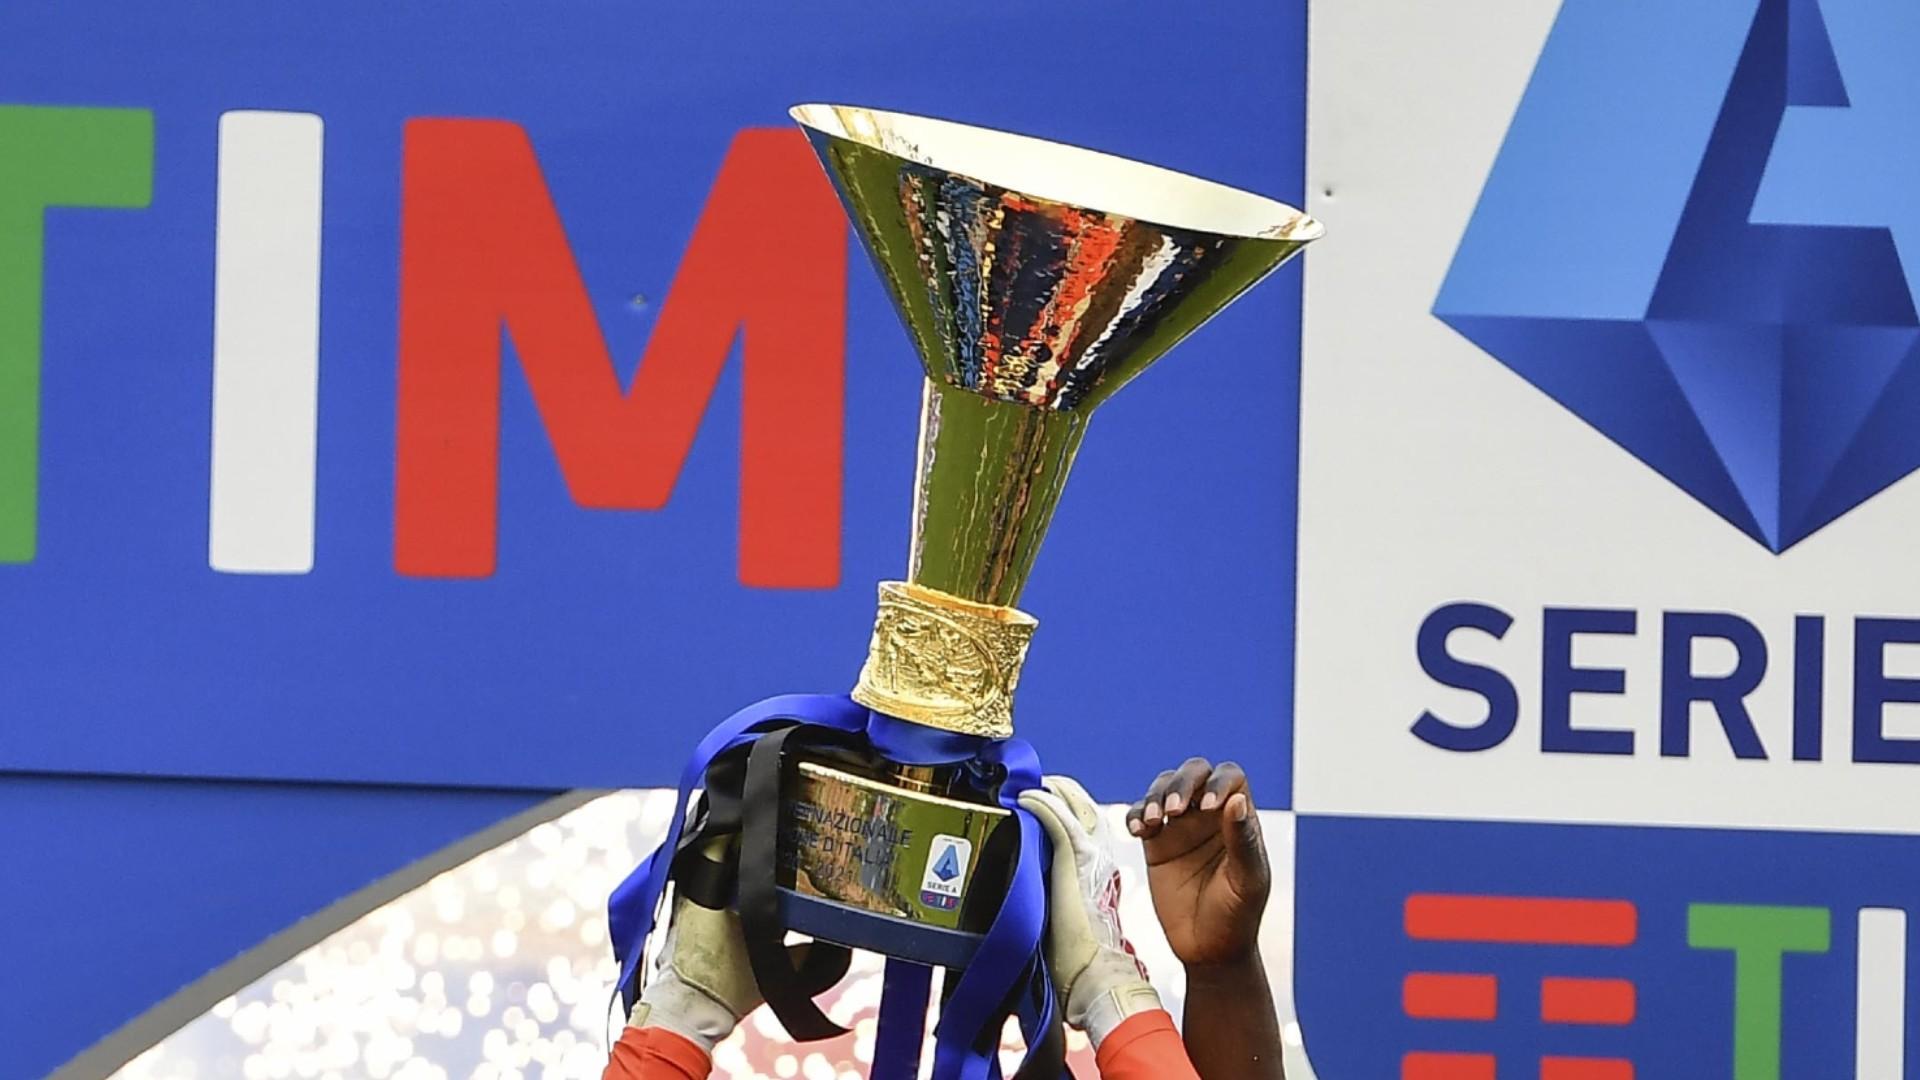 Scudetto nghĩa là gì? Giải thích ý nghĩa, lịch sử của chức vô địch nước Ý | Sporting News Việt Nam